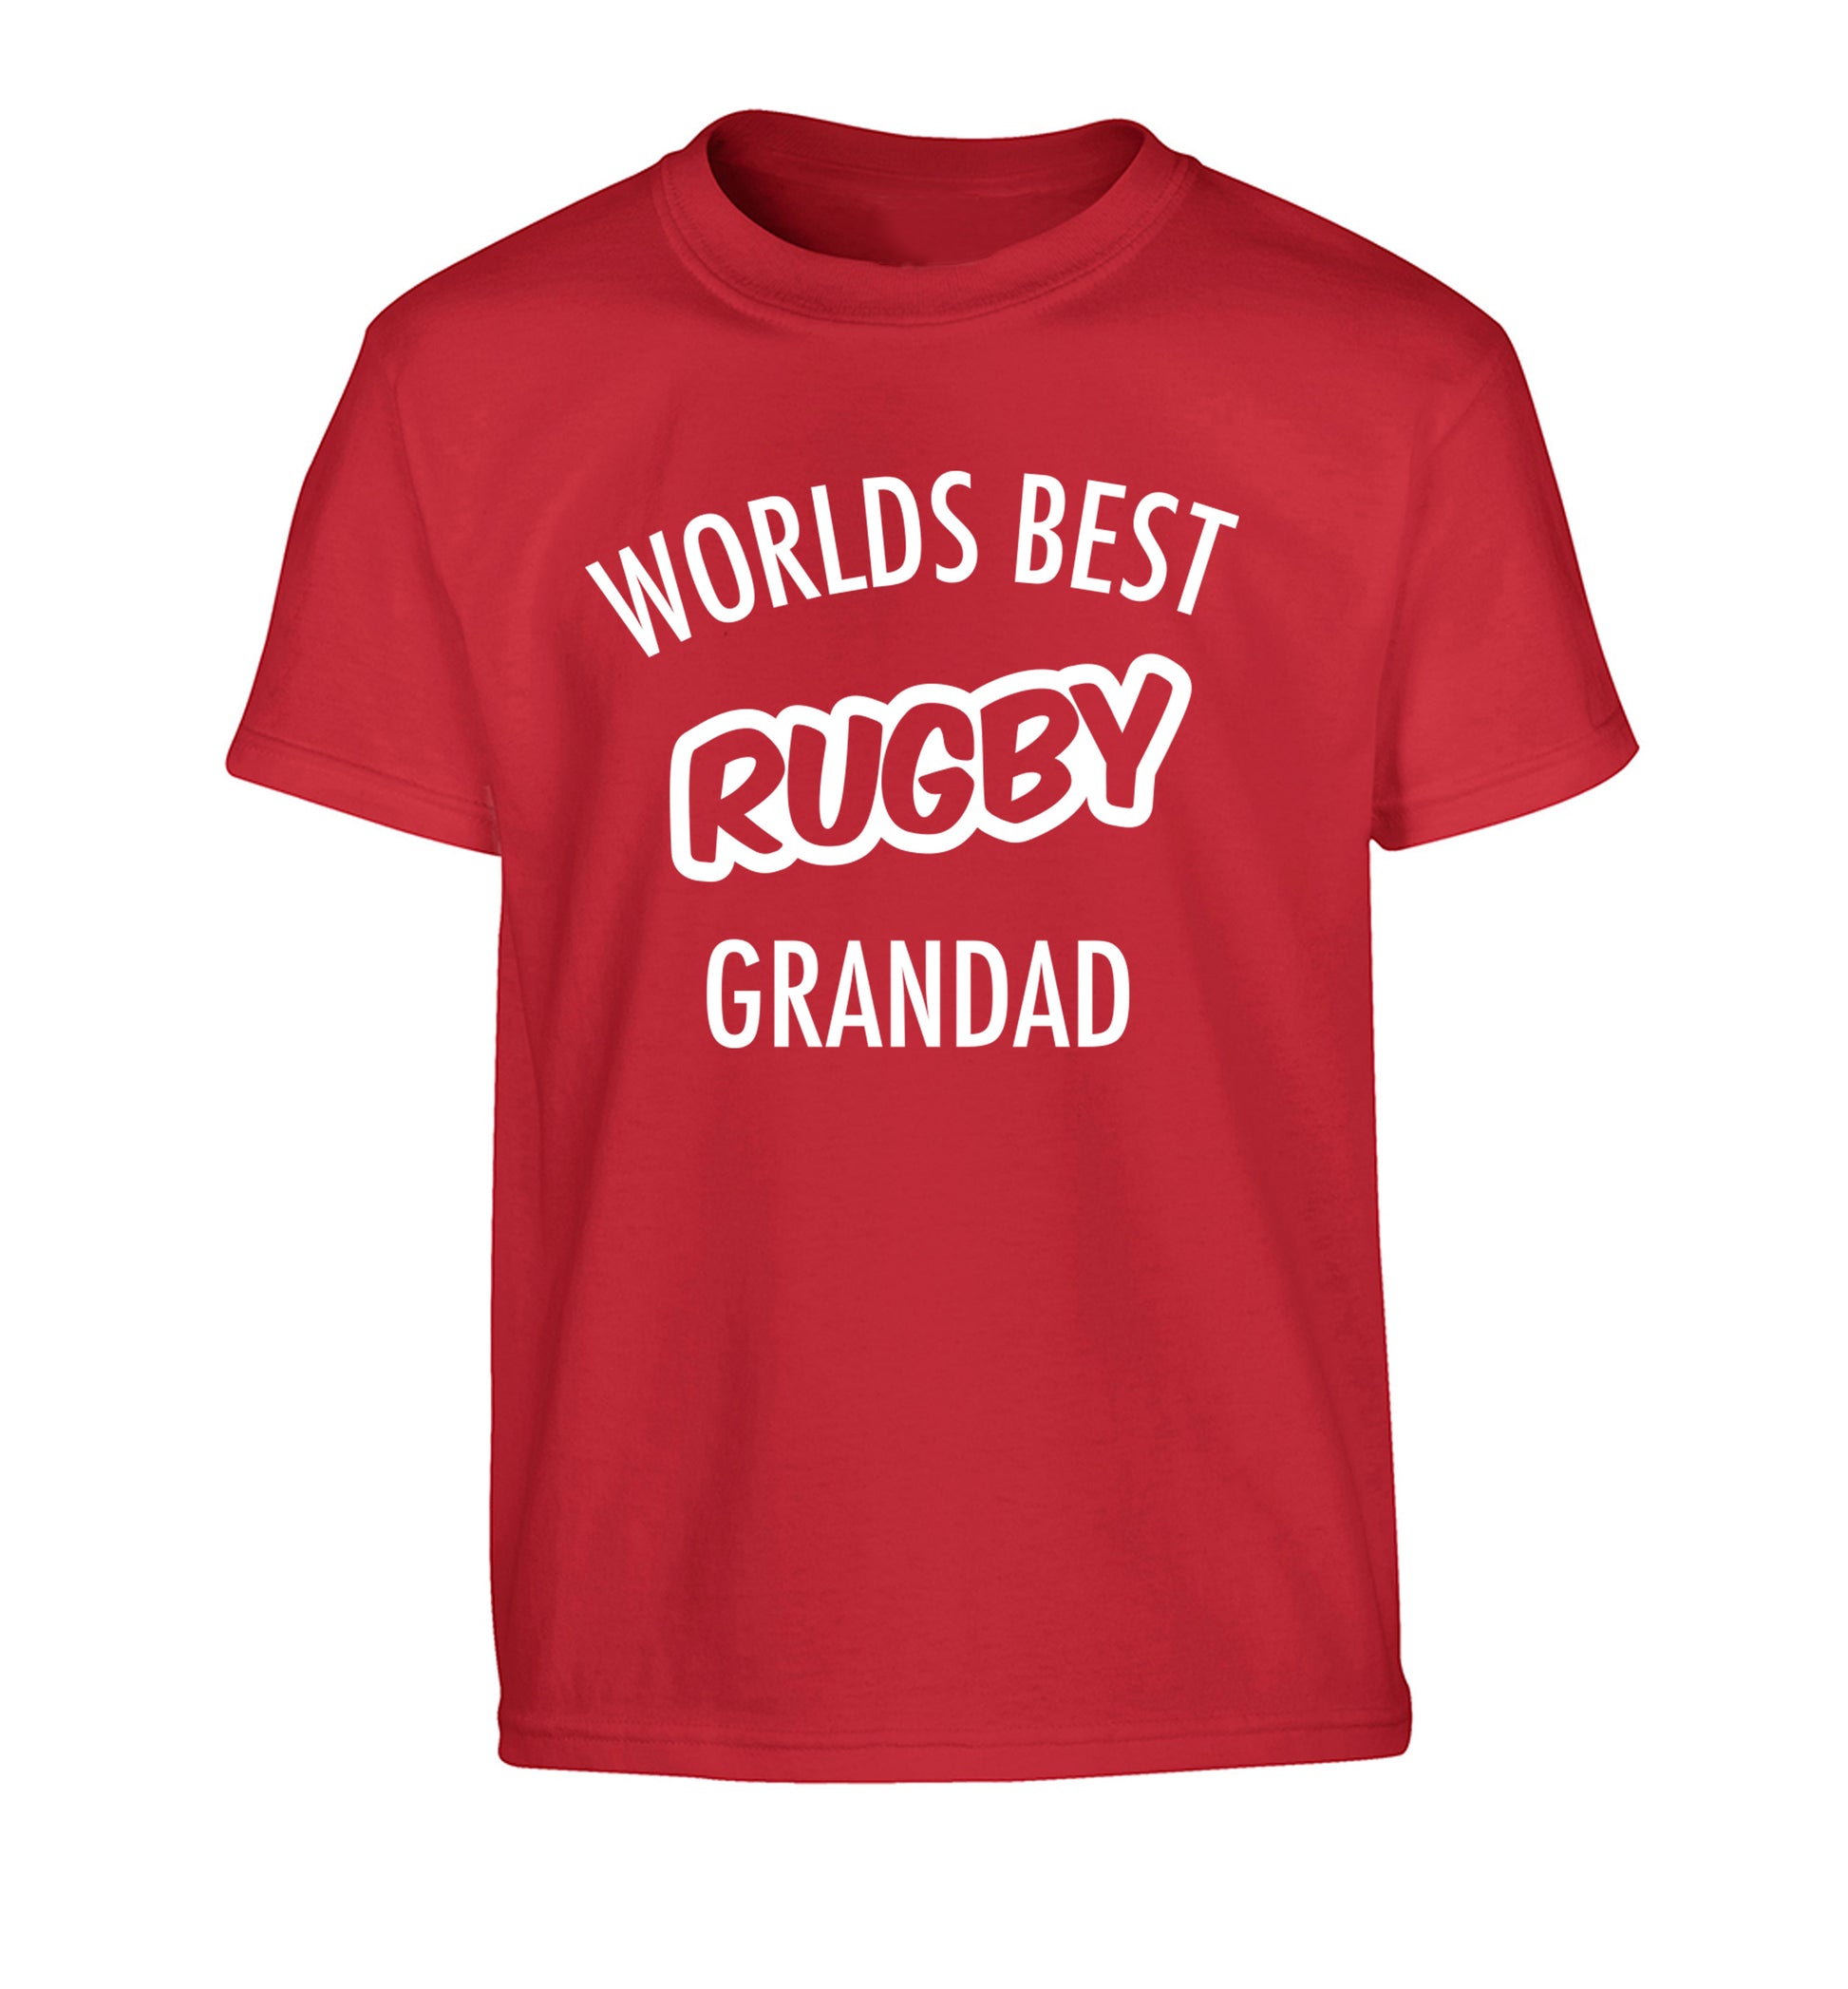 Worlds best rugby grandad Children's red Tshirt 12-13 Years